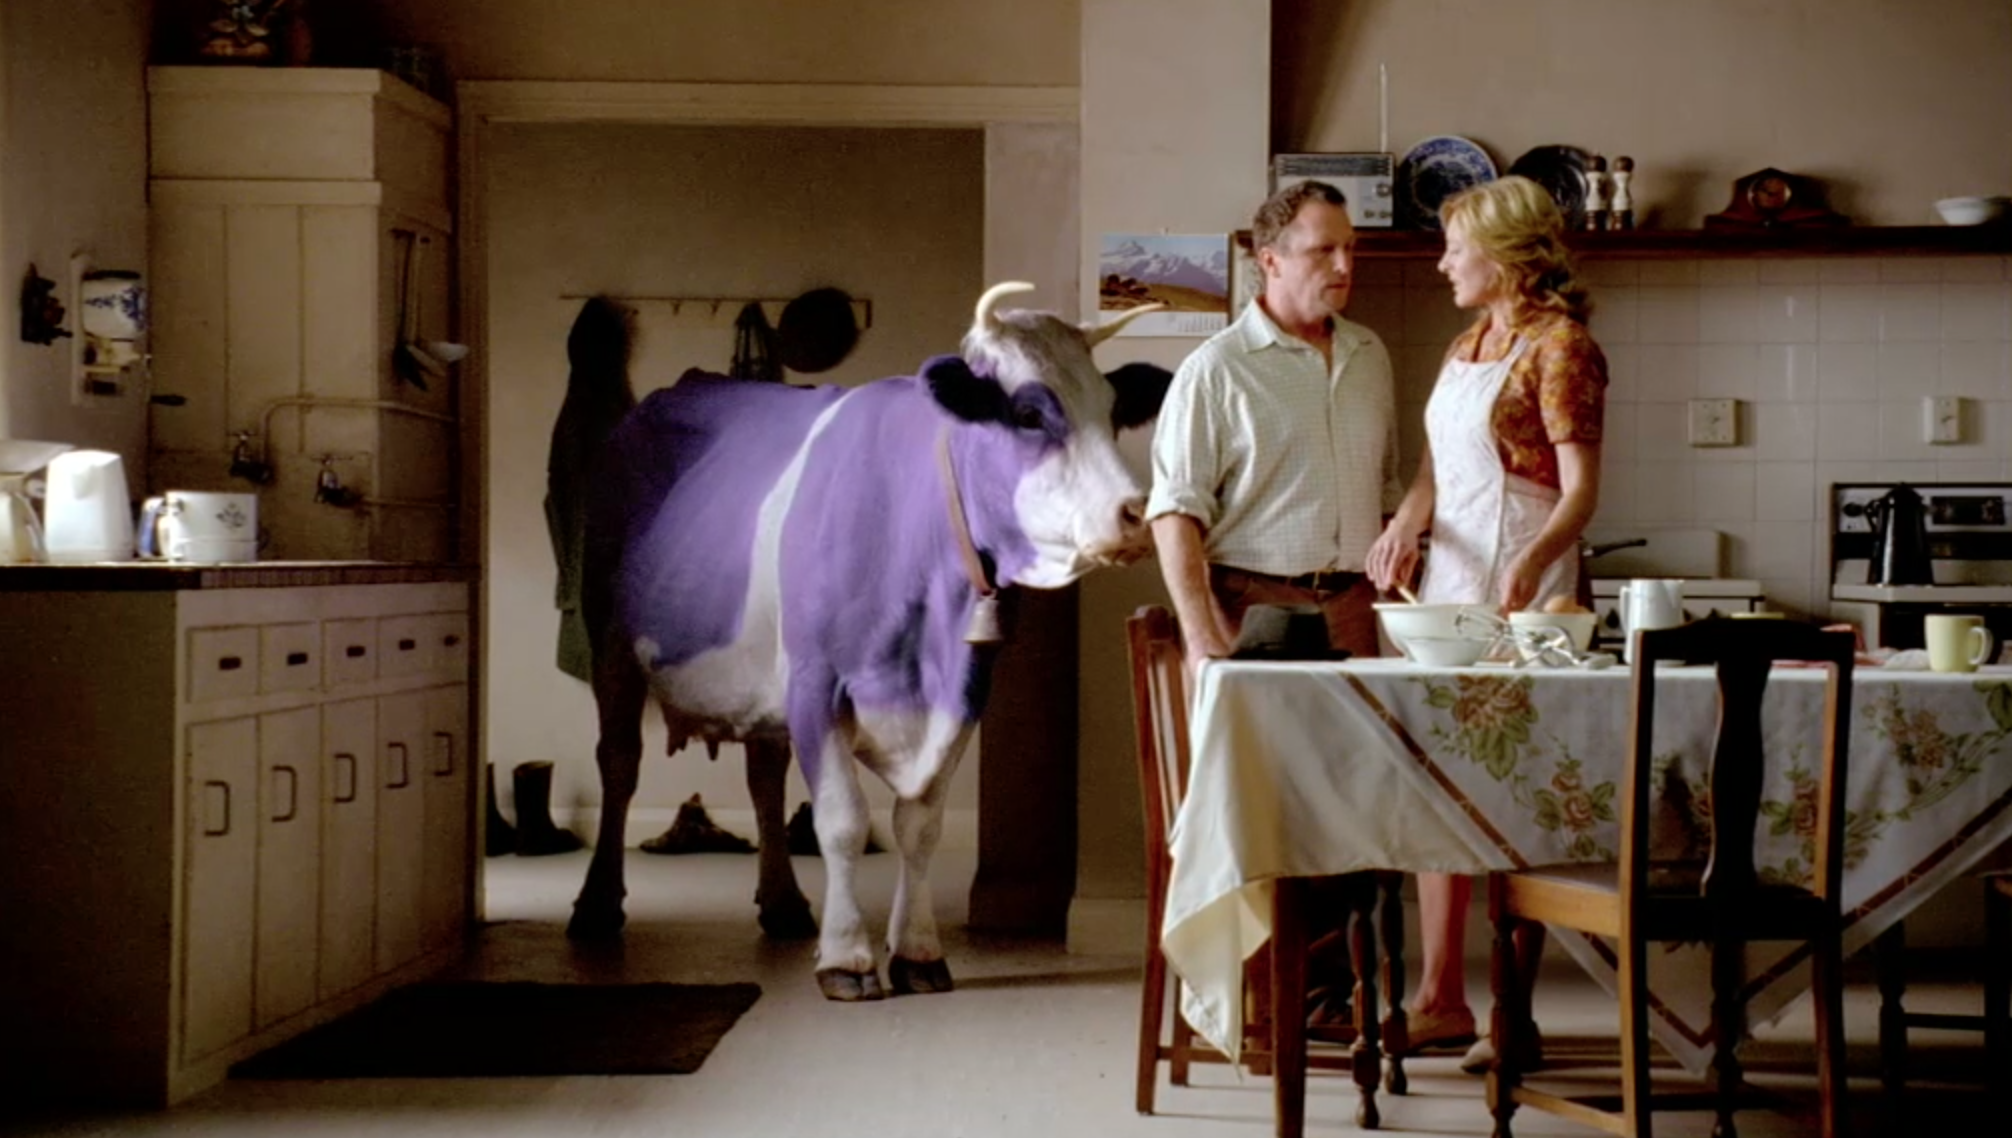 Видео с милкой. Шоколадная Милко корова. Реклама Милка с коровой. Milka шоколад корова. Реклама шоколада Милка.